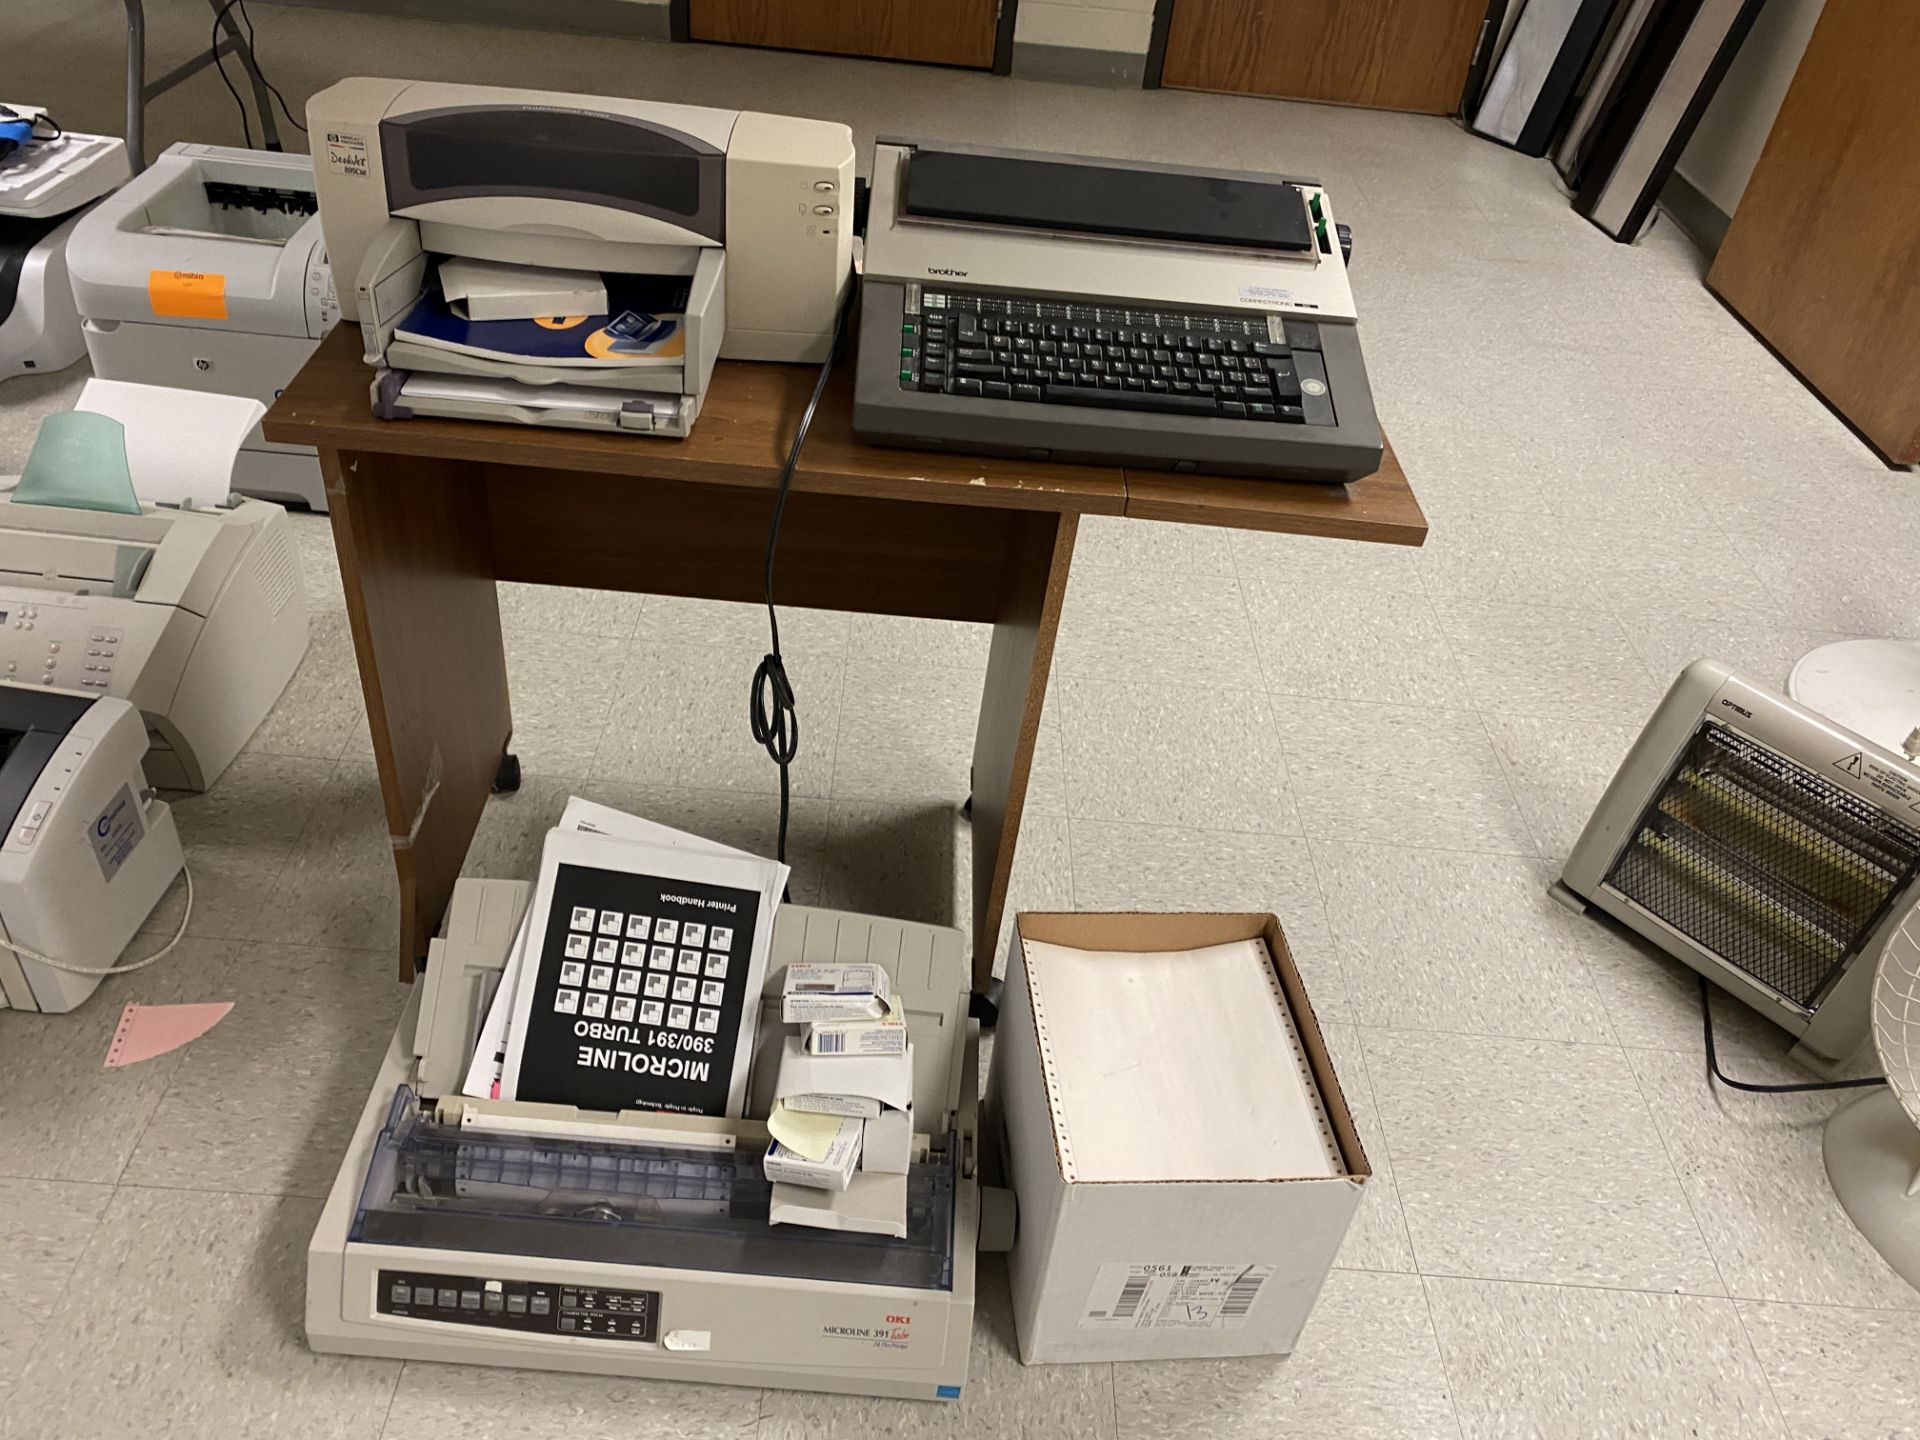 [LOT] OKI Dot matrix printer microline 391, plus (1) Brother electric typewriter, (1) HP deskjet